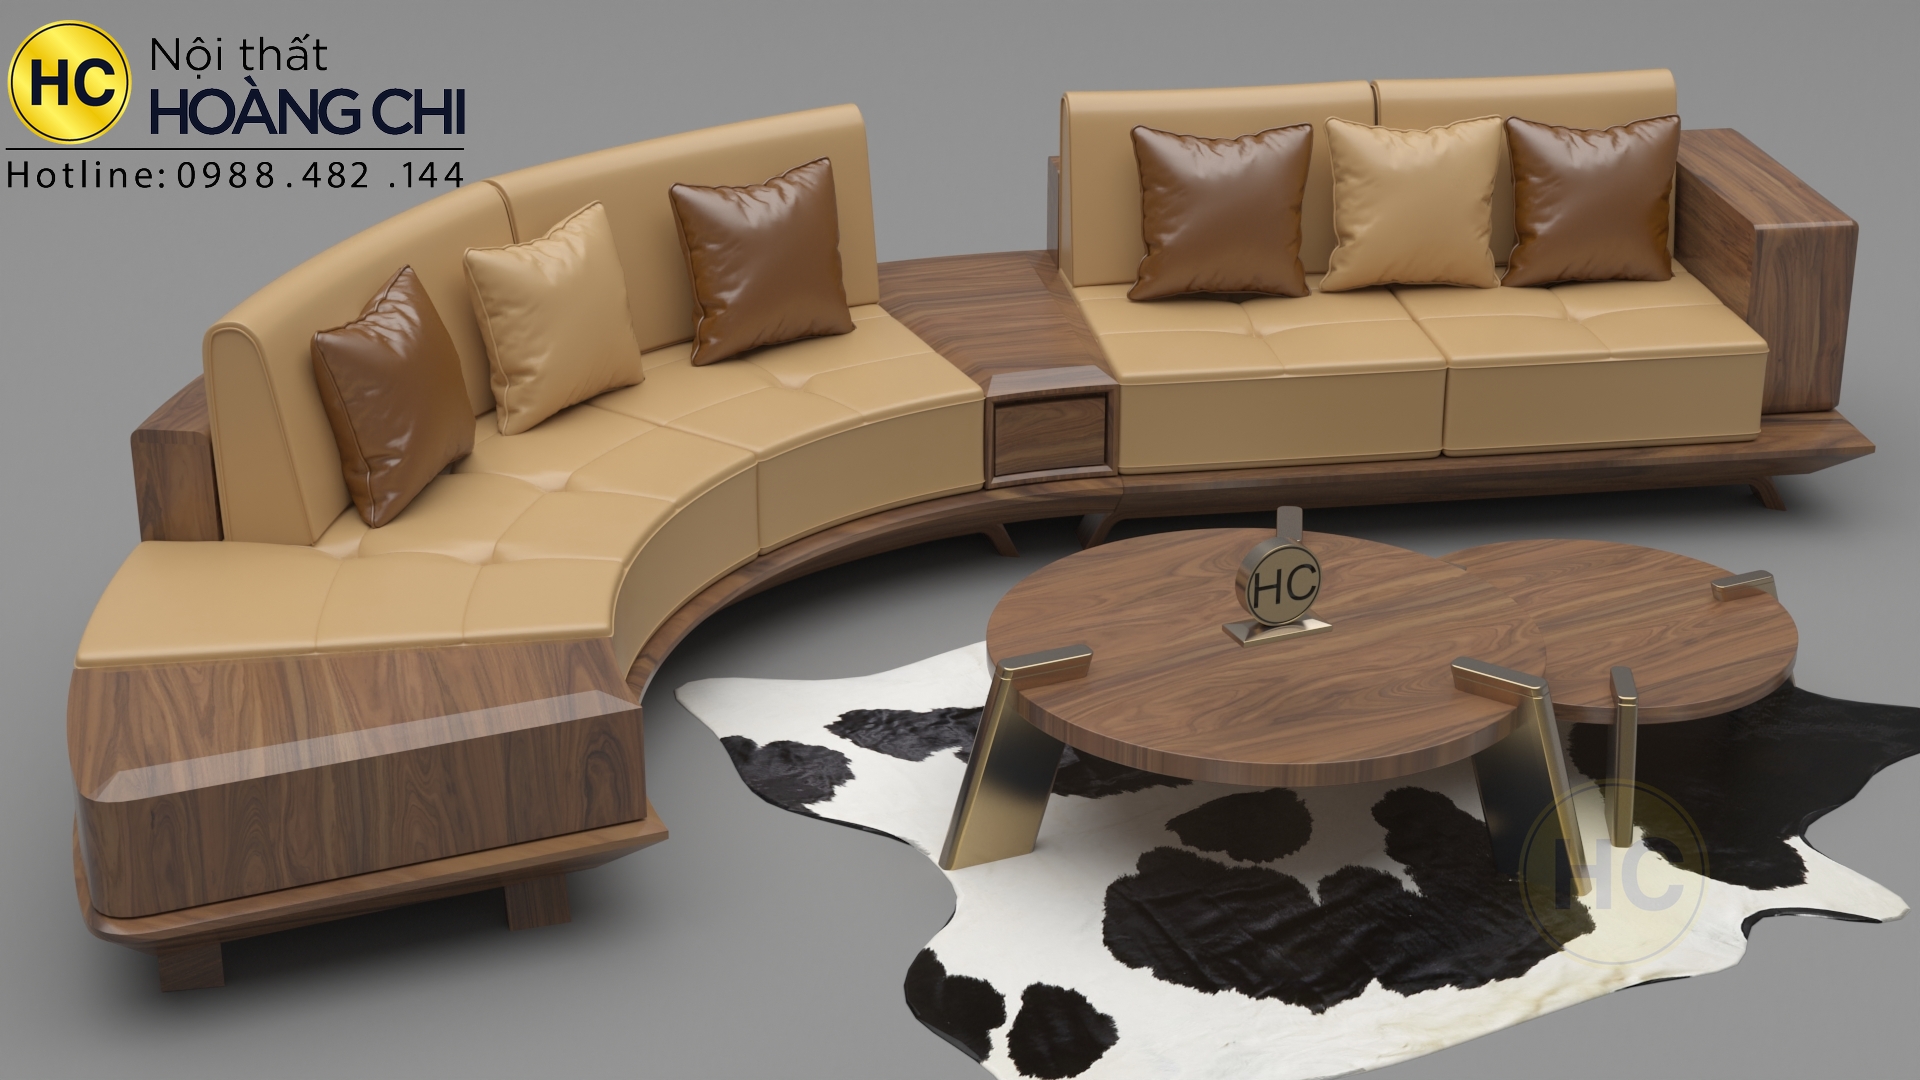 Sofa gỗ óc chó thiết kế cho nhà nhỏ - Với thiết kế tinh tế và độc đáo, chiếc sofa gỗ óc chó này sẽ làm cho không gian phòng khách của bạn trở nên đẹp mắt và hiện đại hơn. Chiếc sofa này được thiết kế đặc biệt cho những không gian sống nhỏ hẹp. Với kích thước nhỏ gọn và chất liệu gỗ óc chó tự nhiên, chiếc sofa này sẽ là một lựa chọn đáng giá cho những ai đang tìm kiếm một sản phẩm đồ nội thất tiện dụng và sang trọng. Hãy xem hình ảnh để cảm nhận rõ hơn vẻ đẹp của chiếc sofa này.